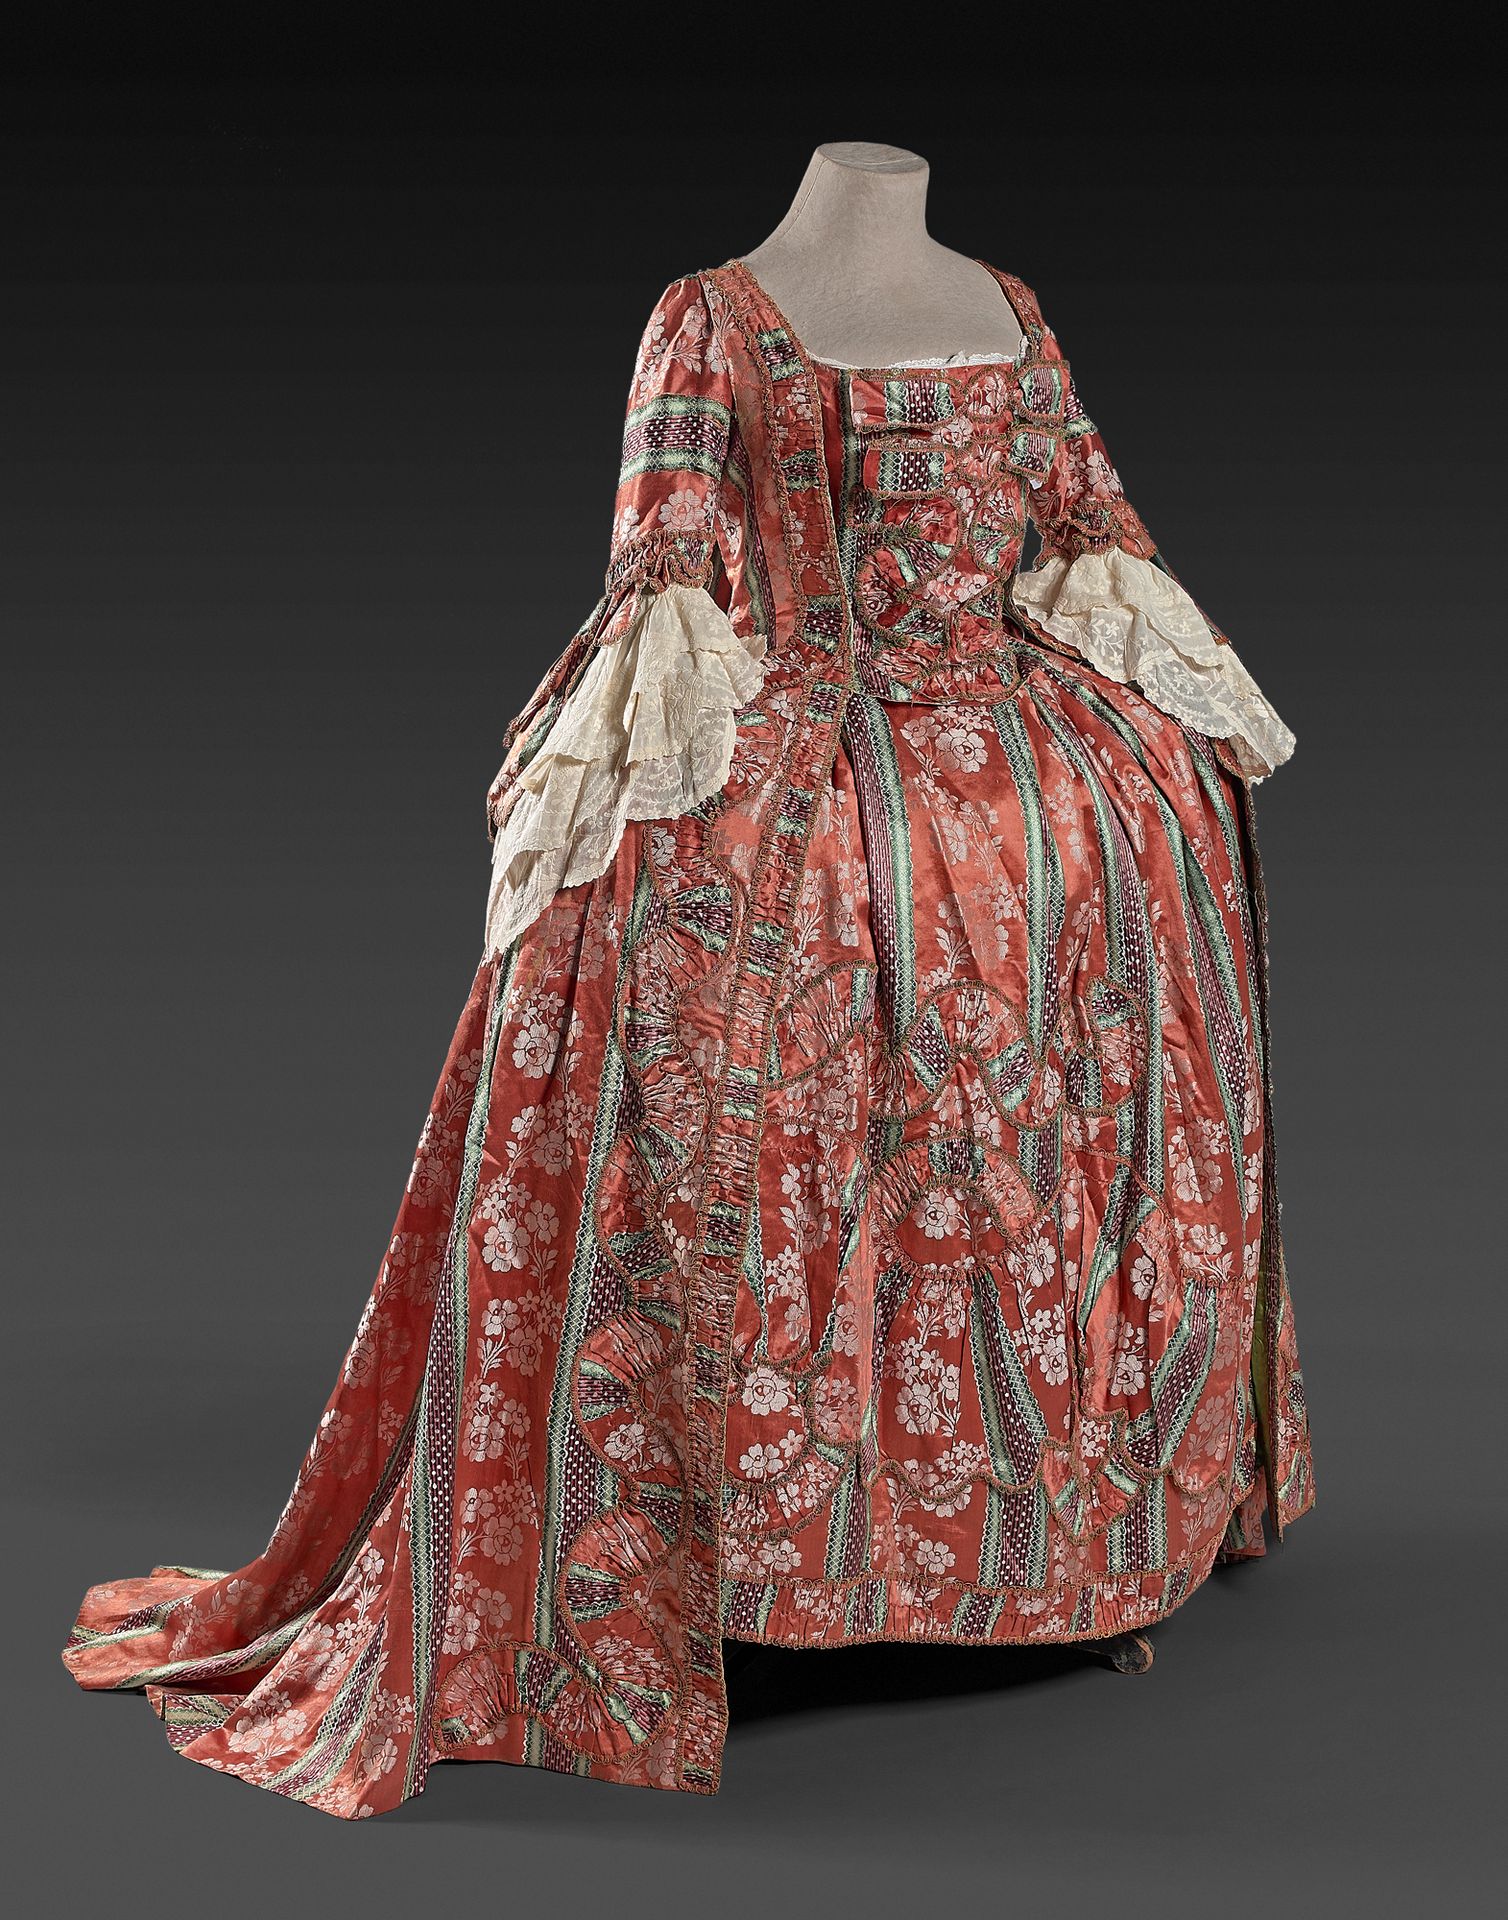 Null 普罗旺斯，约1763年，路易十五时期的法国连衣裙及其腹部的碎片。
赭石色的缎子背景上有绿色和紫色的阴影条纹，上面装饰着白色的花纹。礼服外套和完整的衬裙&hellip;